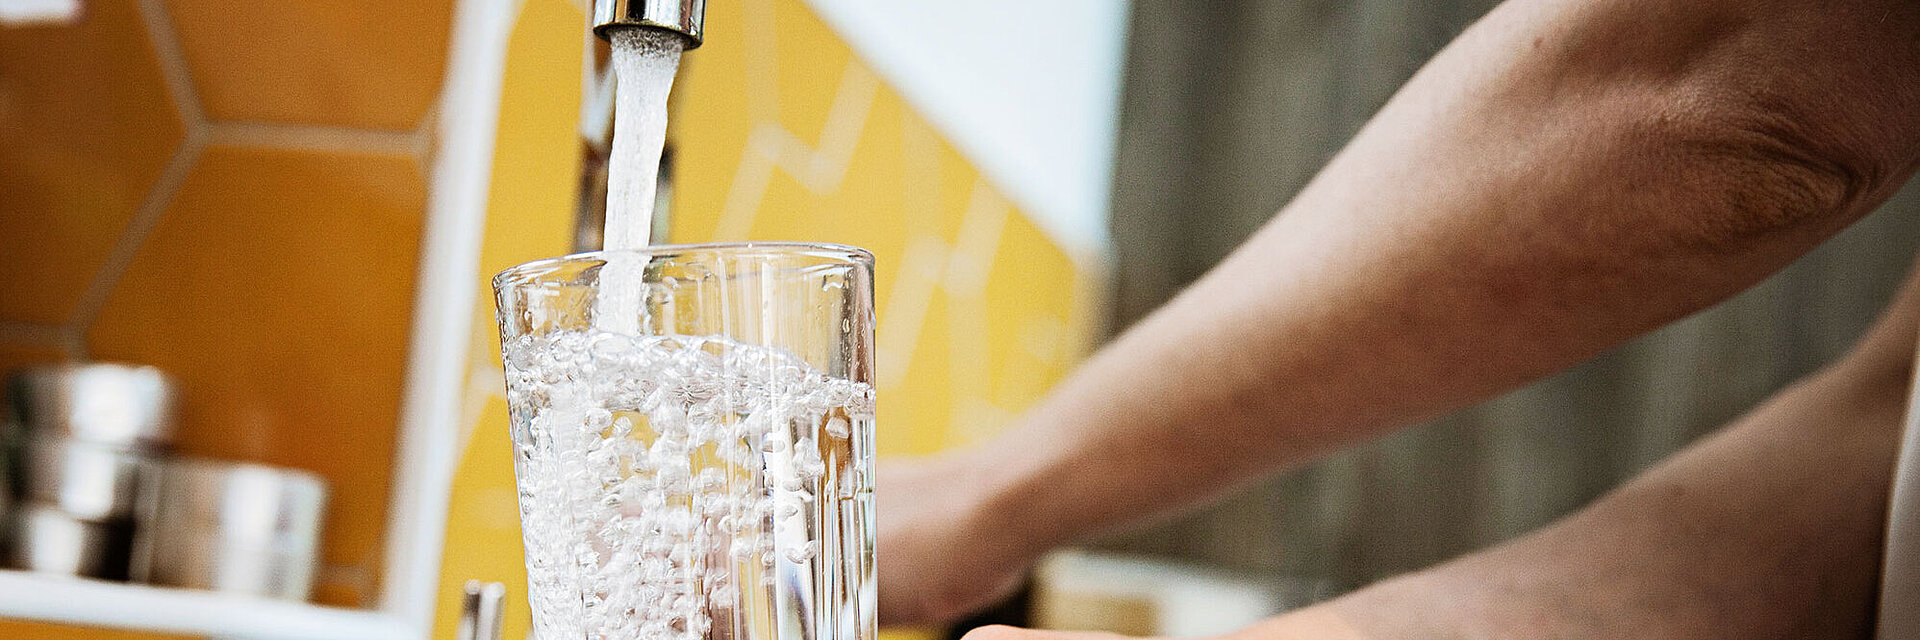 Trinkglas wird an Wasserhahn befüllt